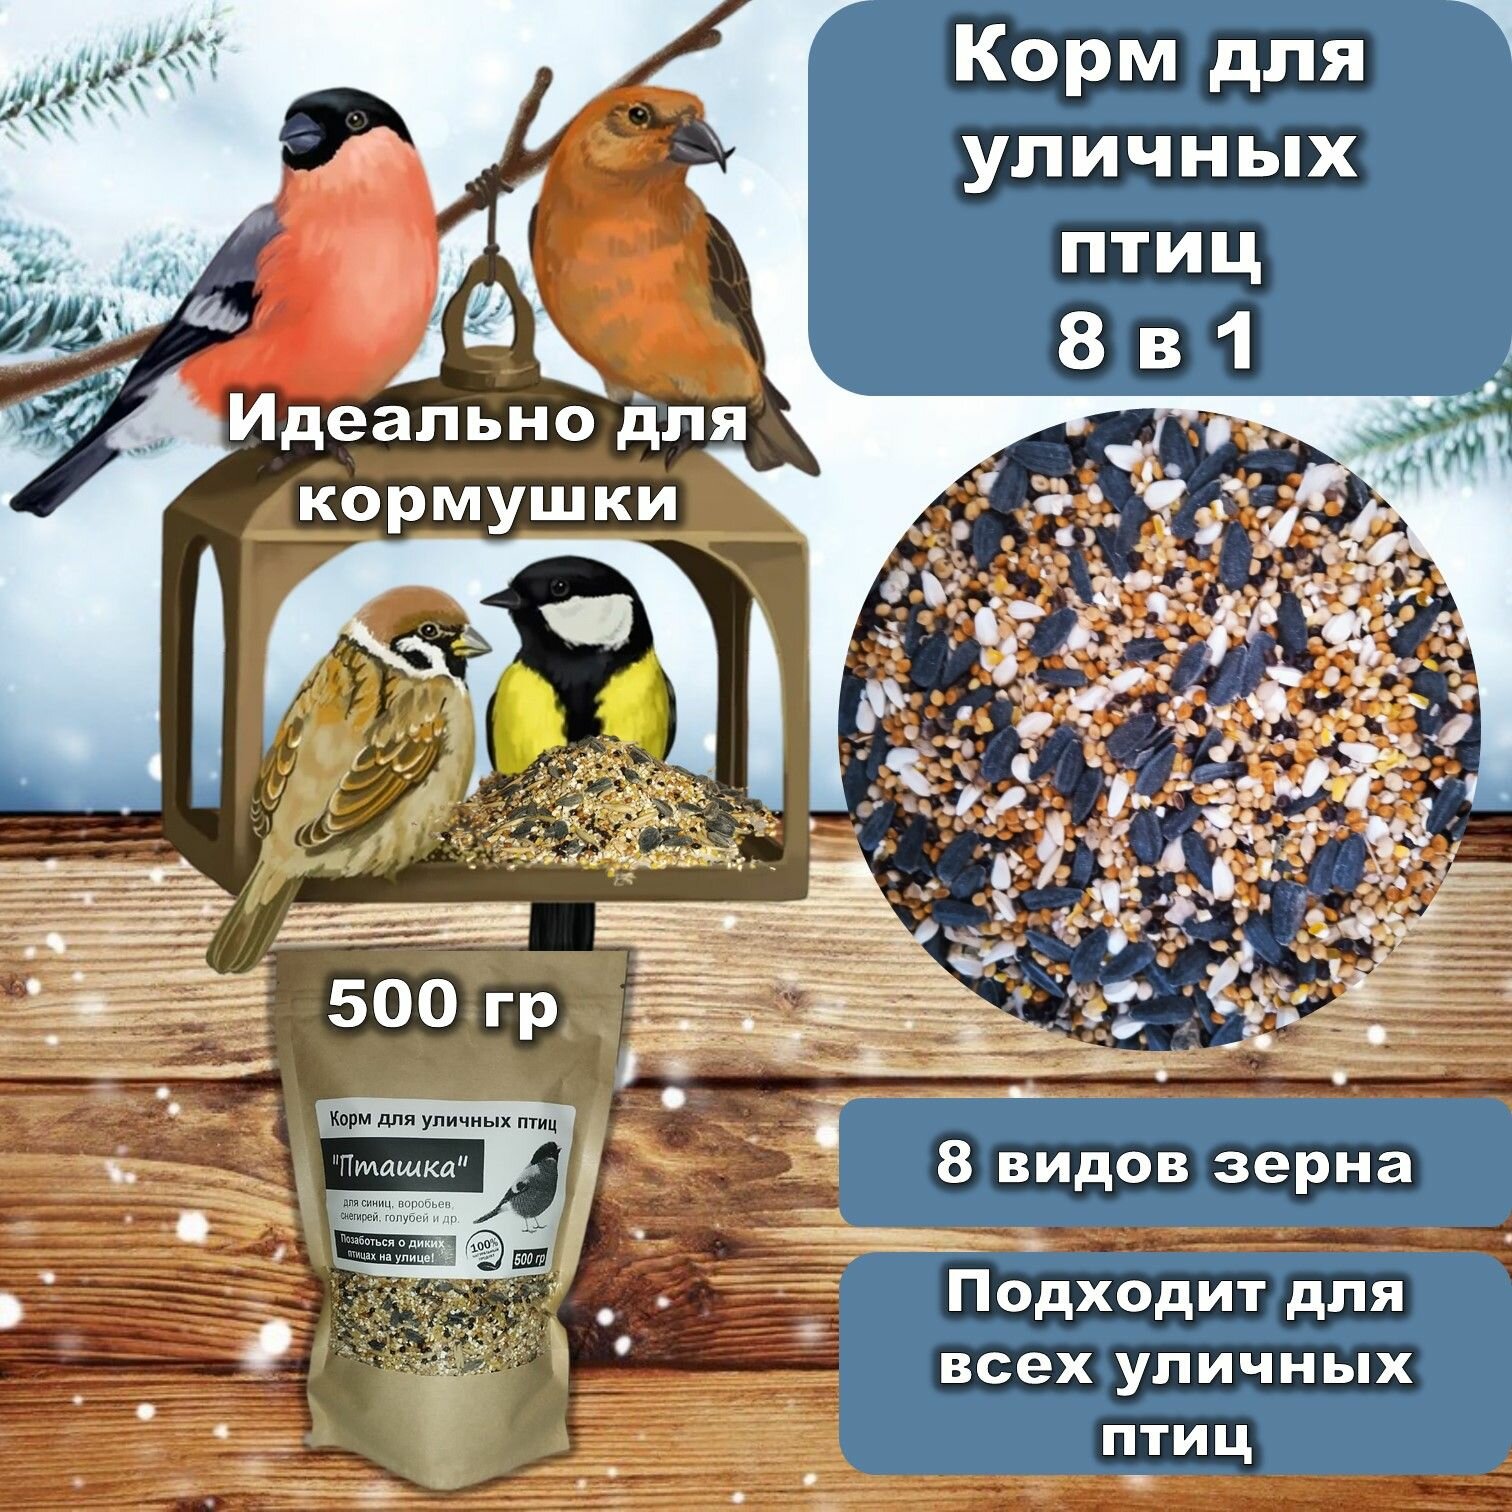 Корм для птиц 8 в 1 "Пташка" зерновой для всех уличных и лесных птиц, 500 гр